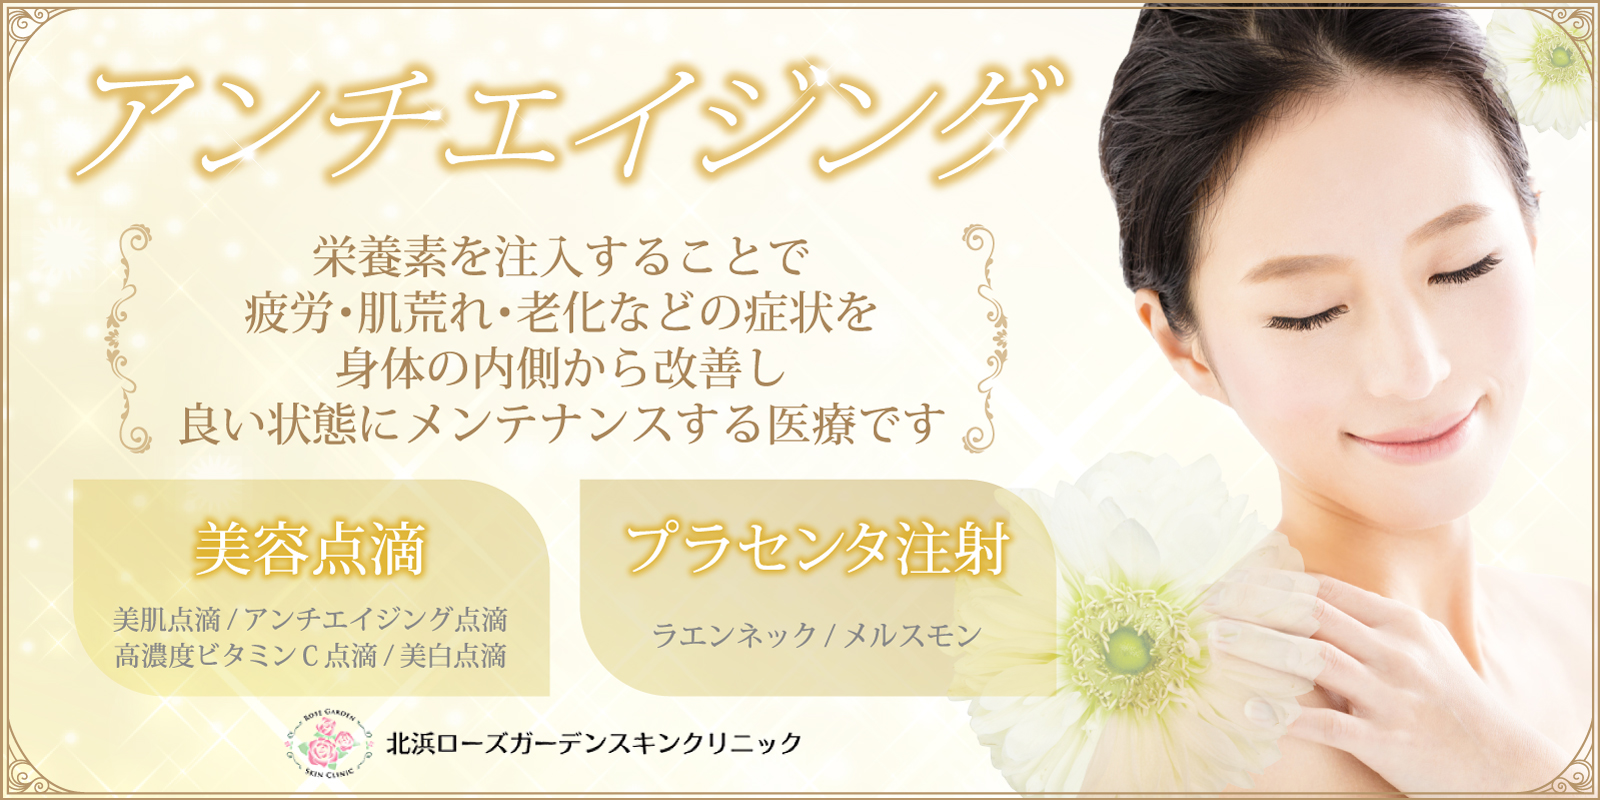 都会にたたずむ『Beauty Oasis』Kitahama Rose Garden Skin Clinic